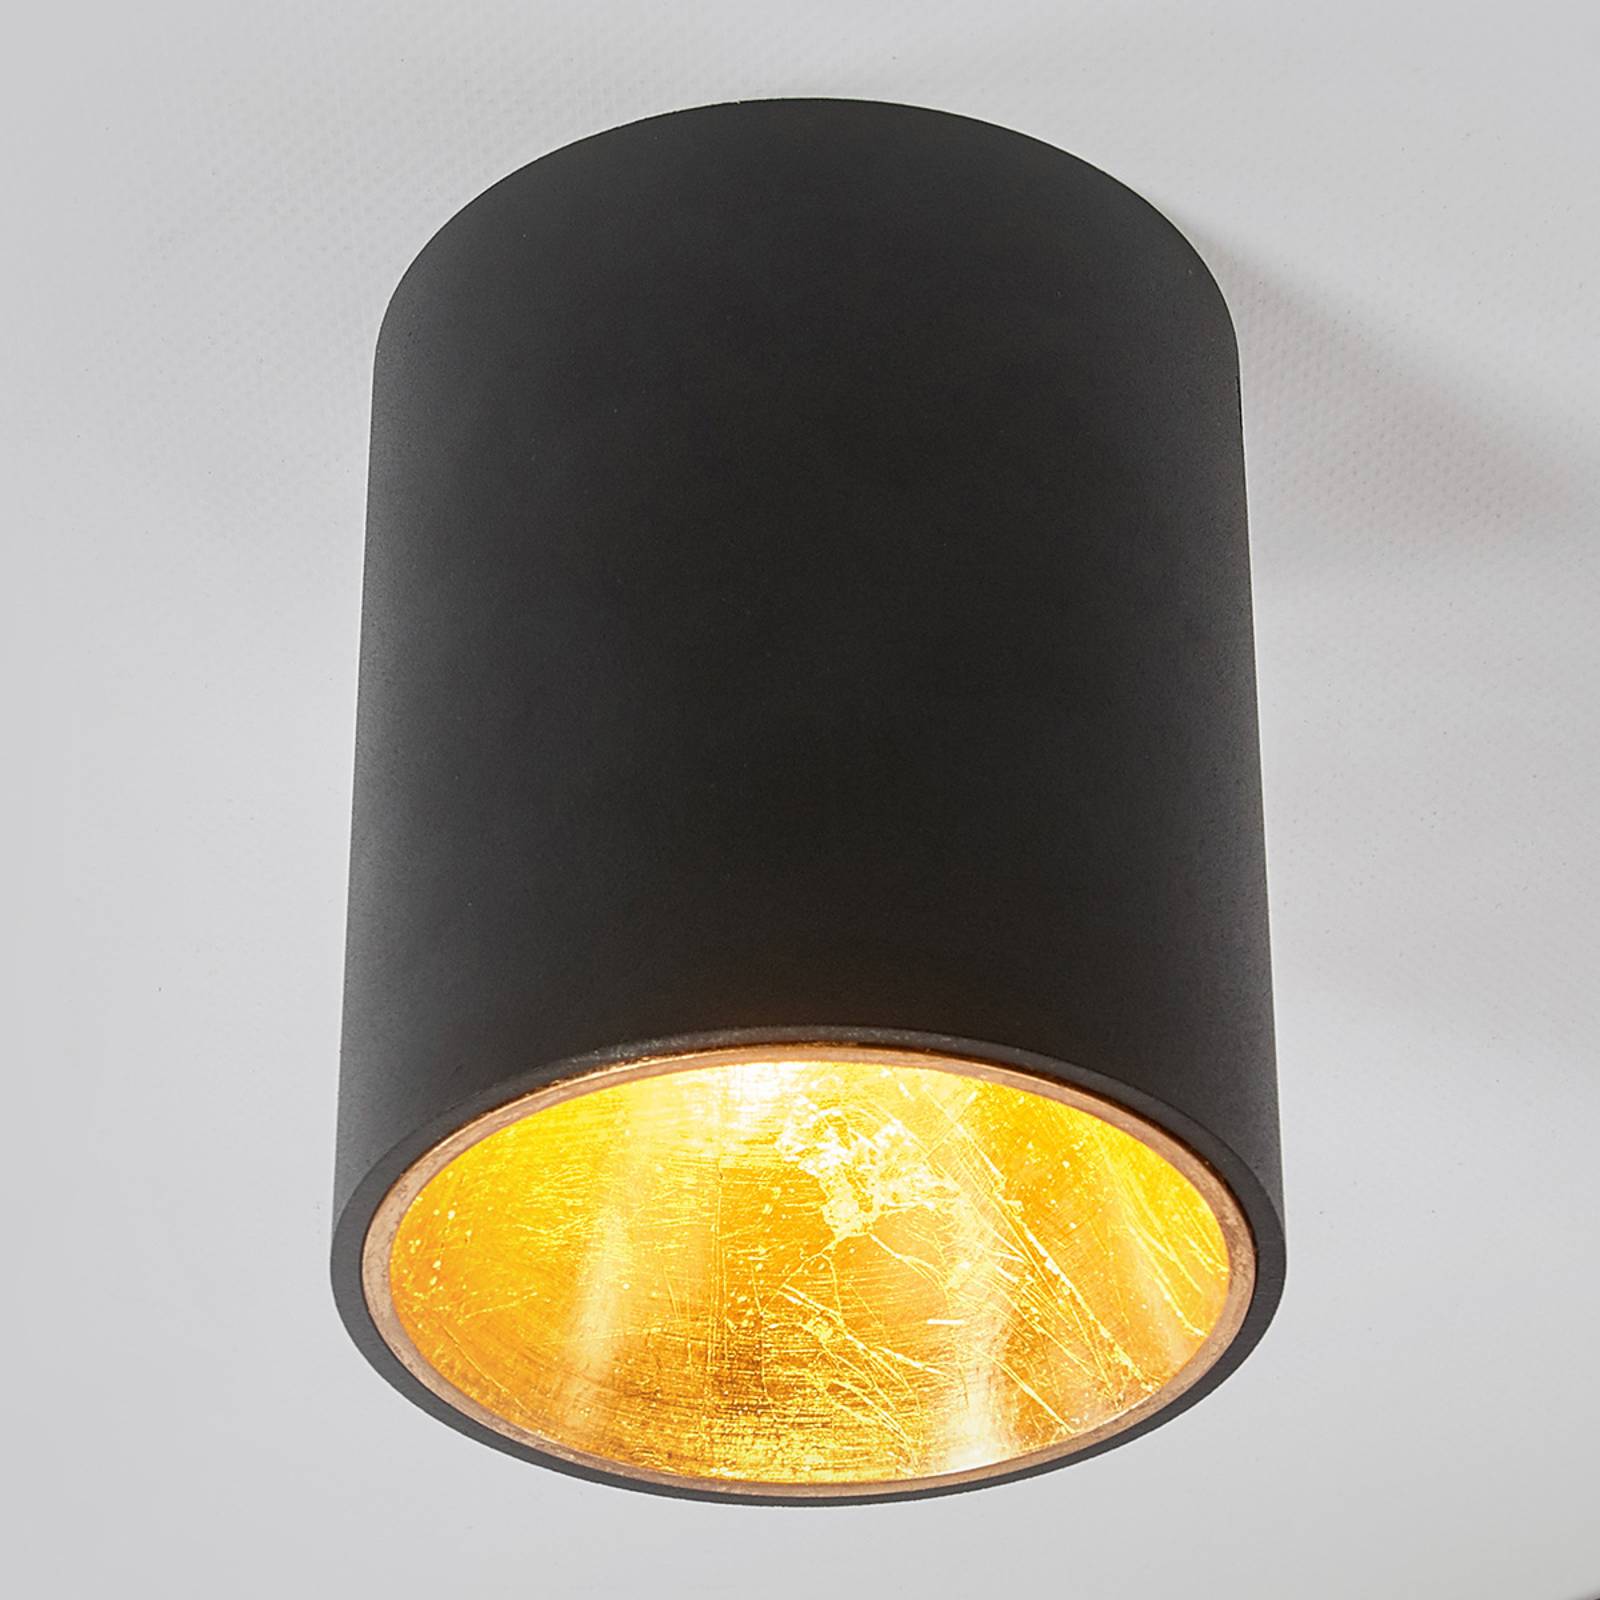 Musta-kultainen LED-kattolamppu Juma, pyöreä